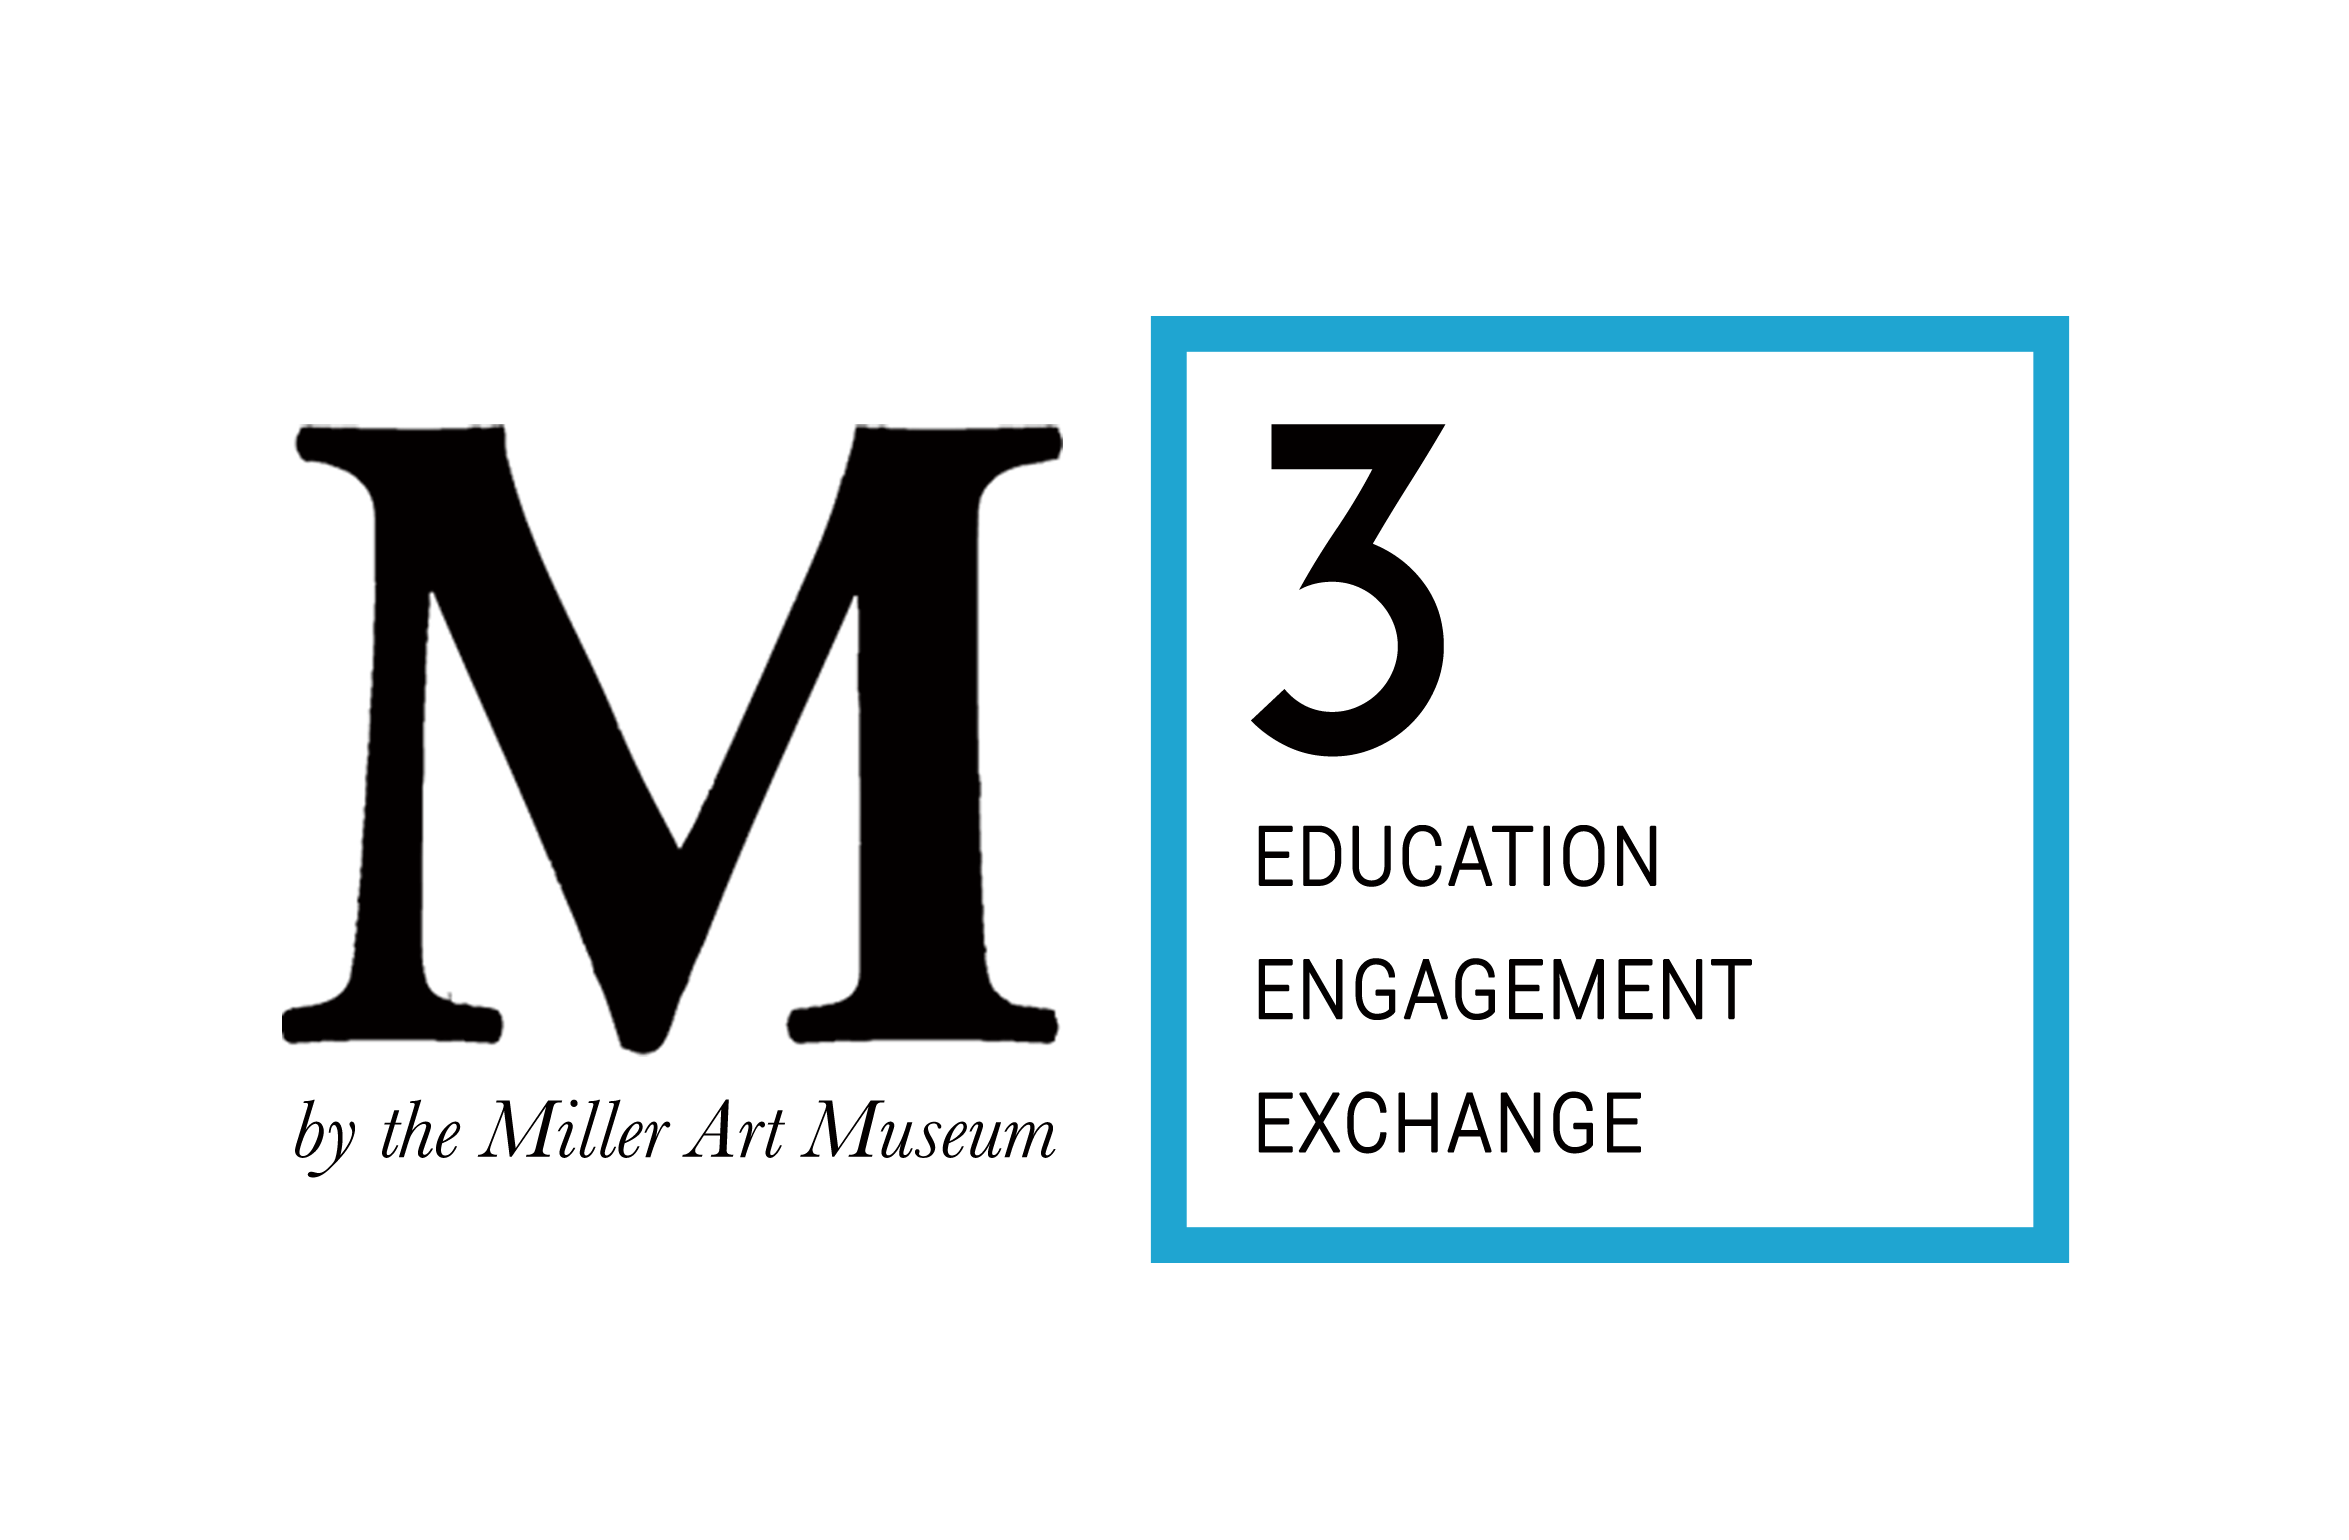 M3 logo